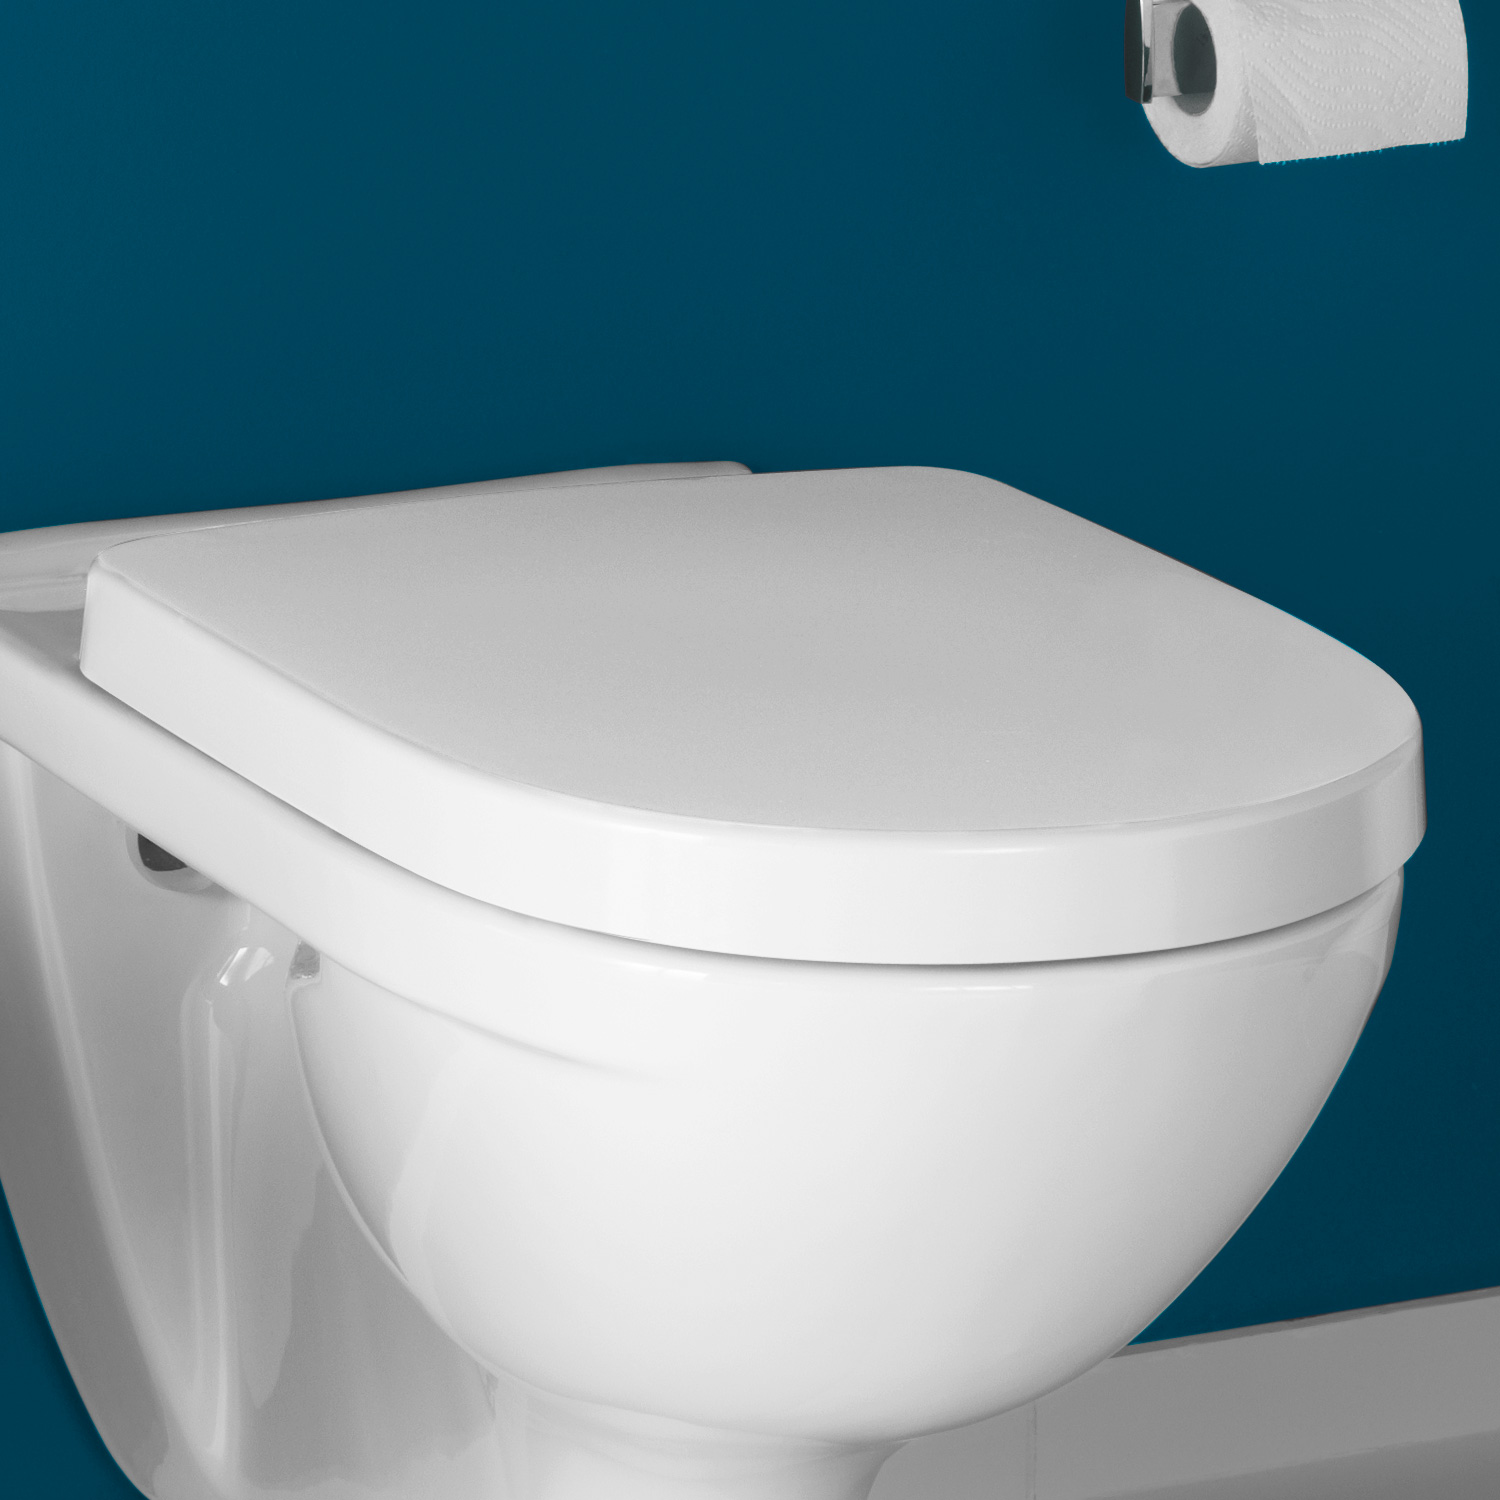 Toilet Seat 9M4061 Alpine White Villeroy & Boch O.novo 9M406101